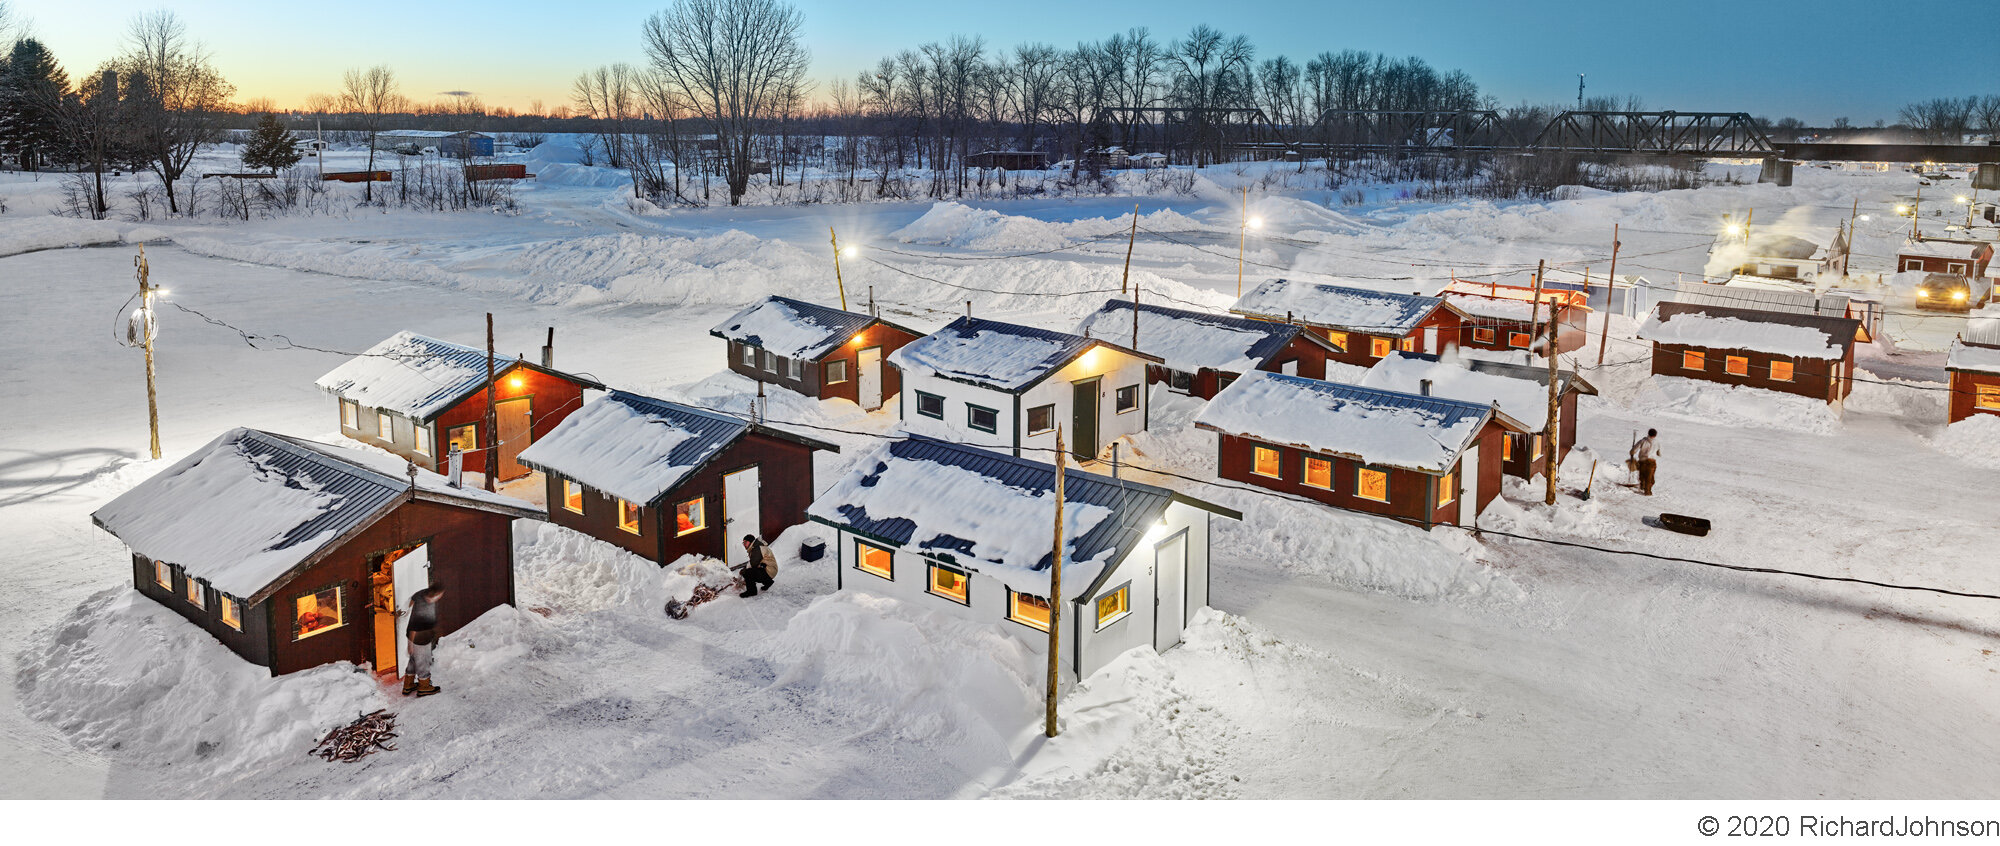 Ice Village # 281, Sainte-Anne-de-La-Pérade, Québec, Canada, 2020